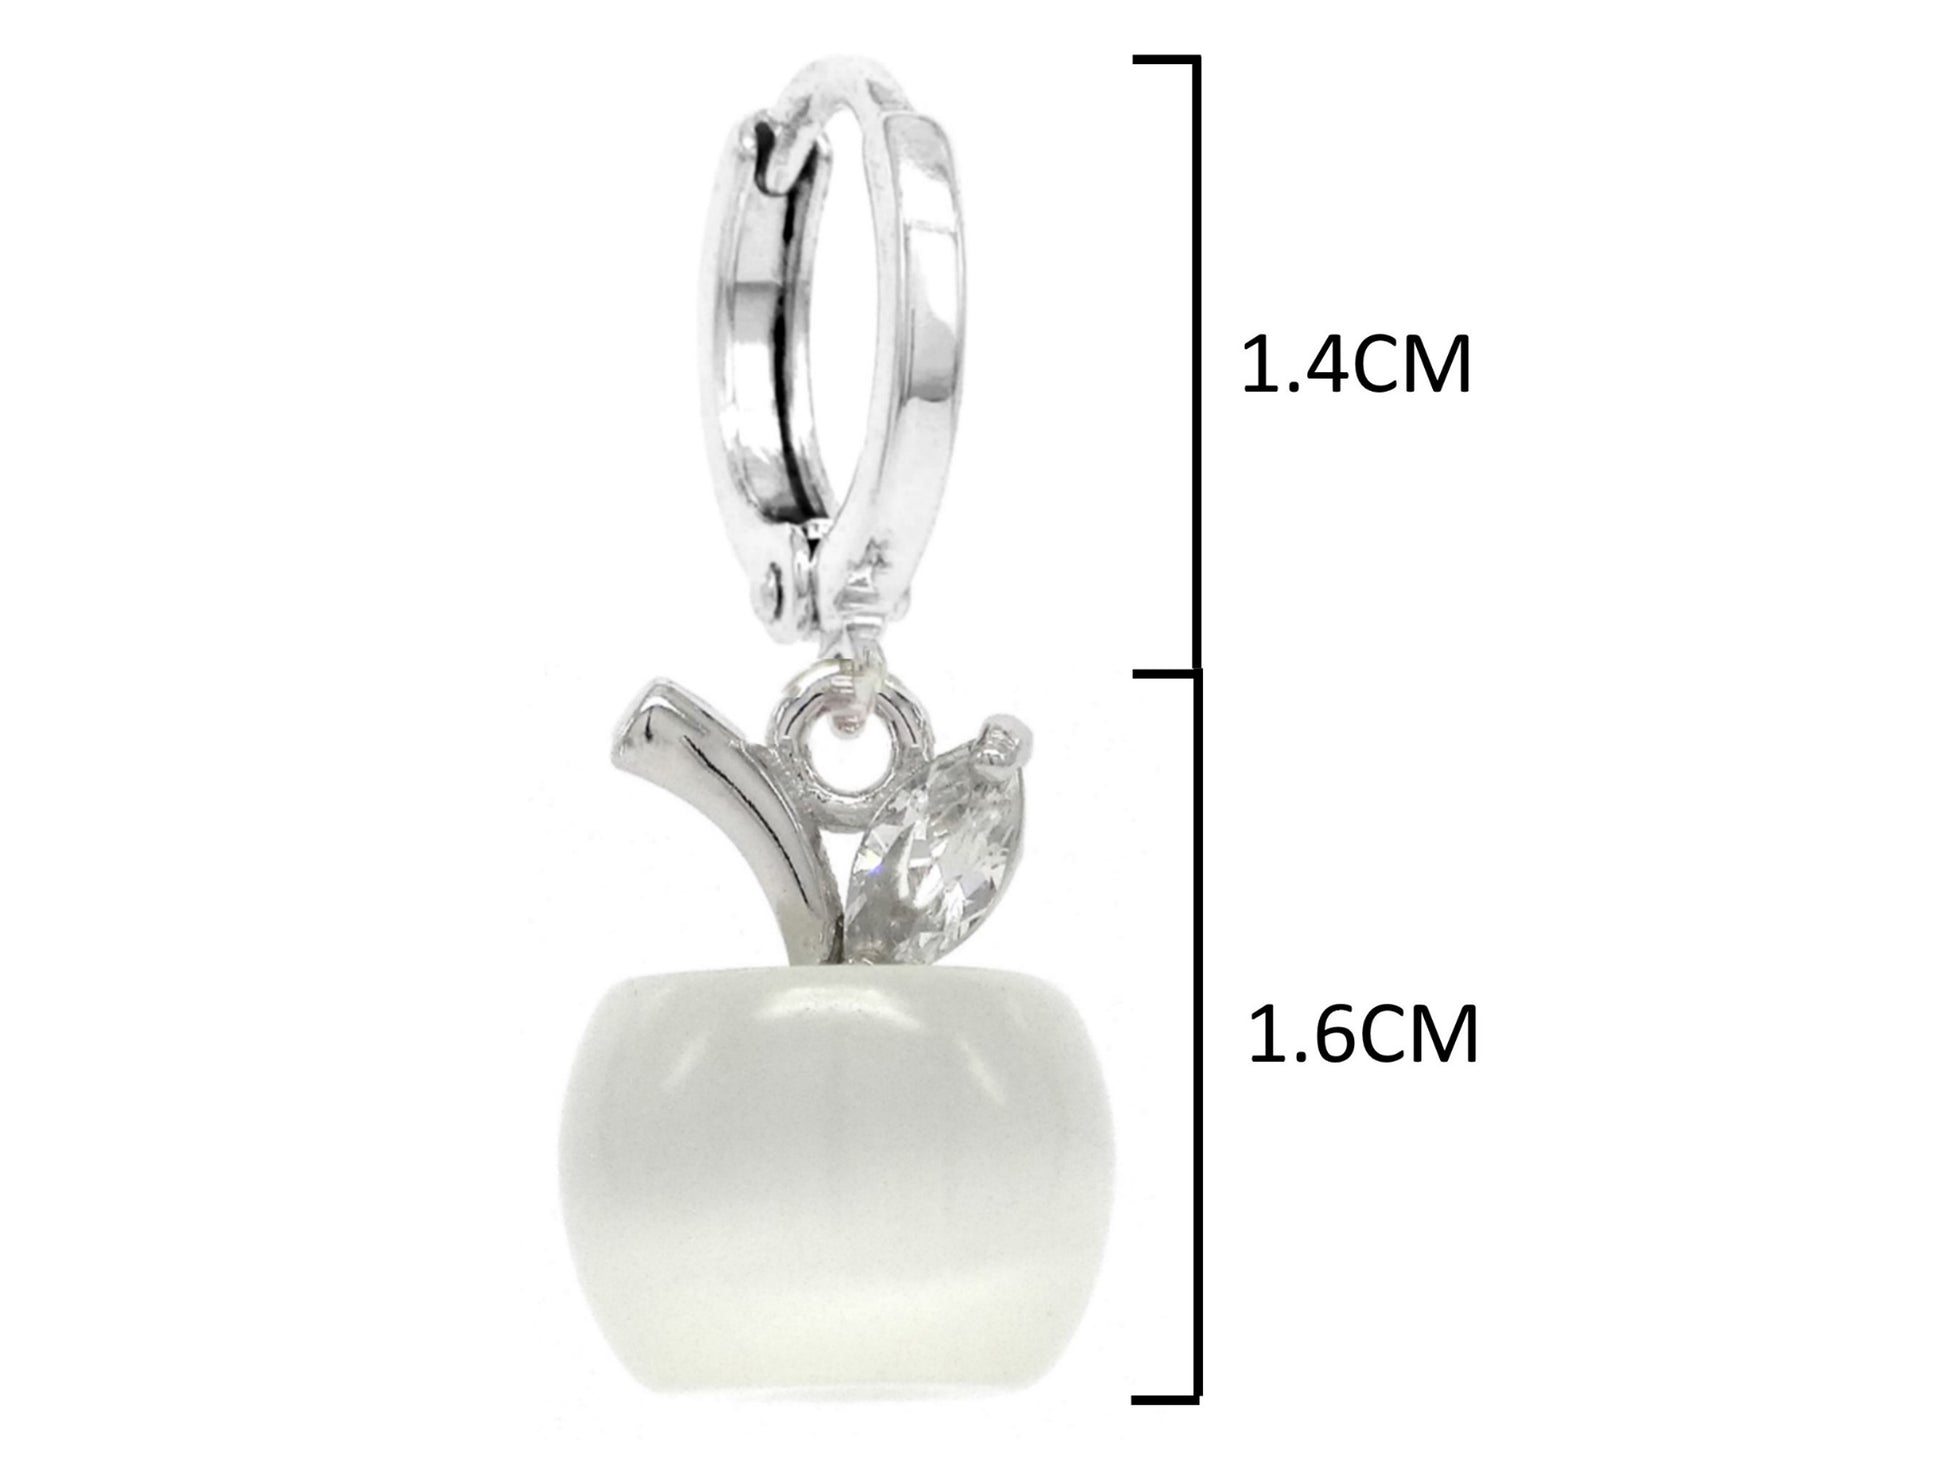 White apple hoop earrings MEASUREMENT